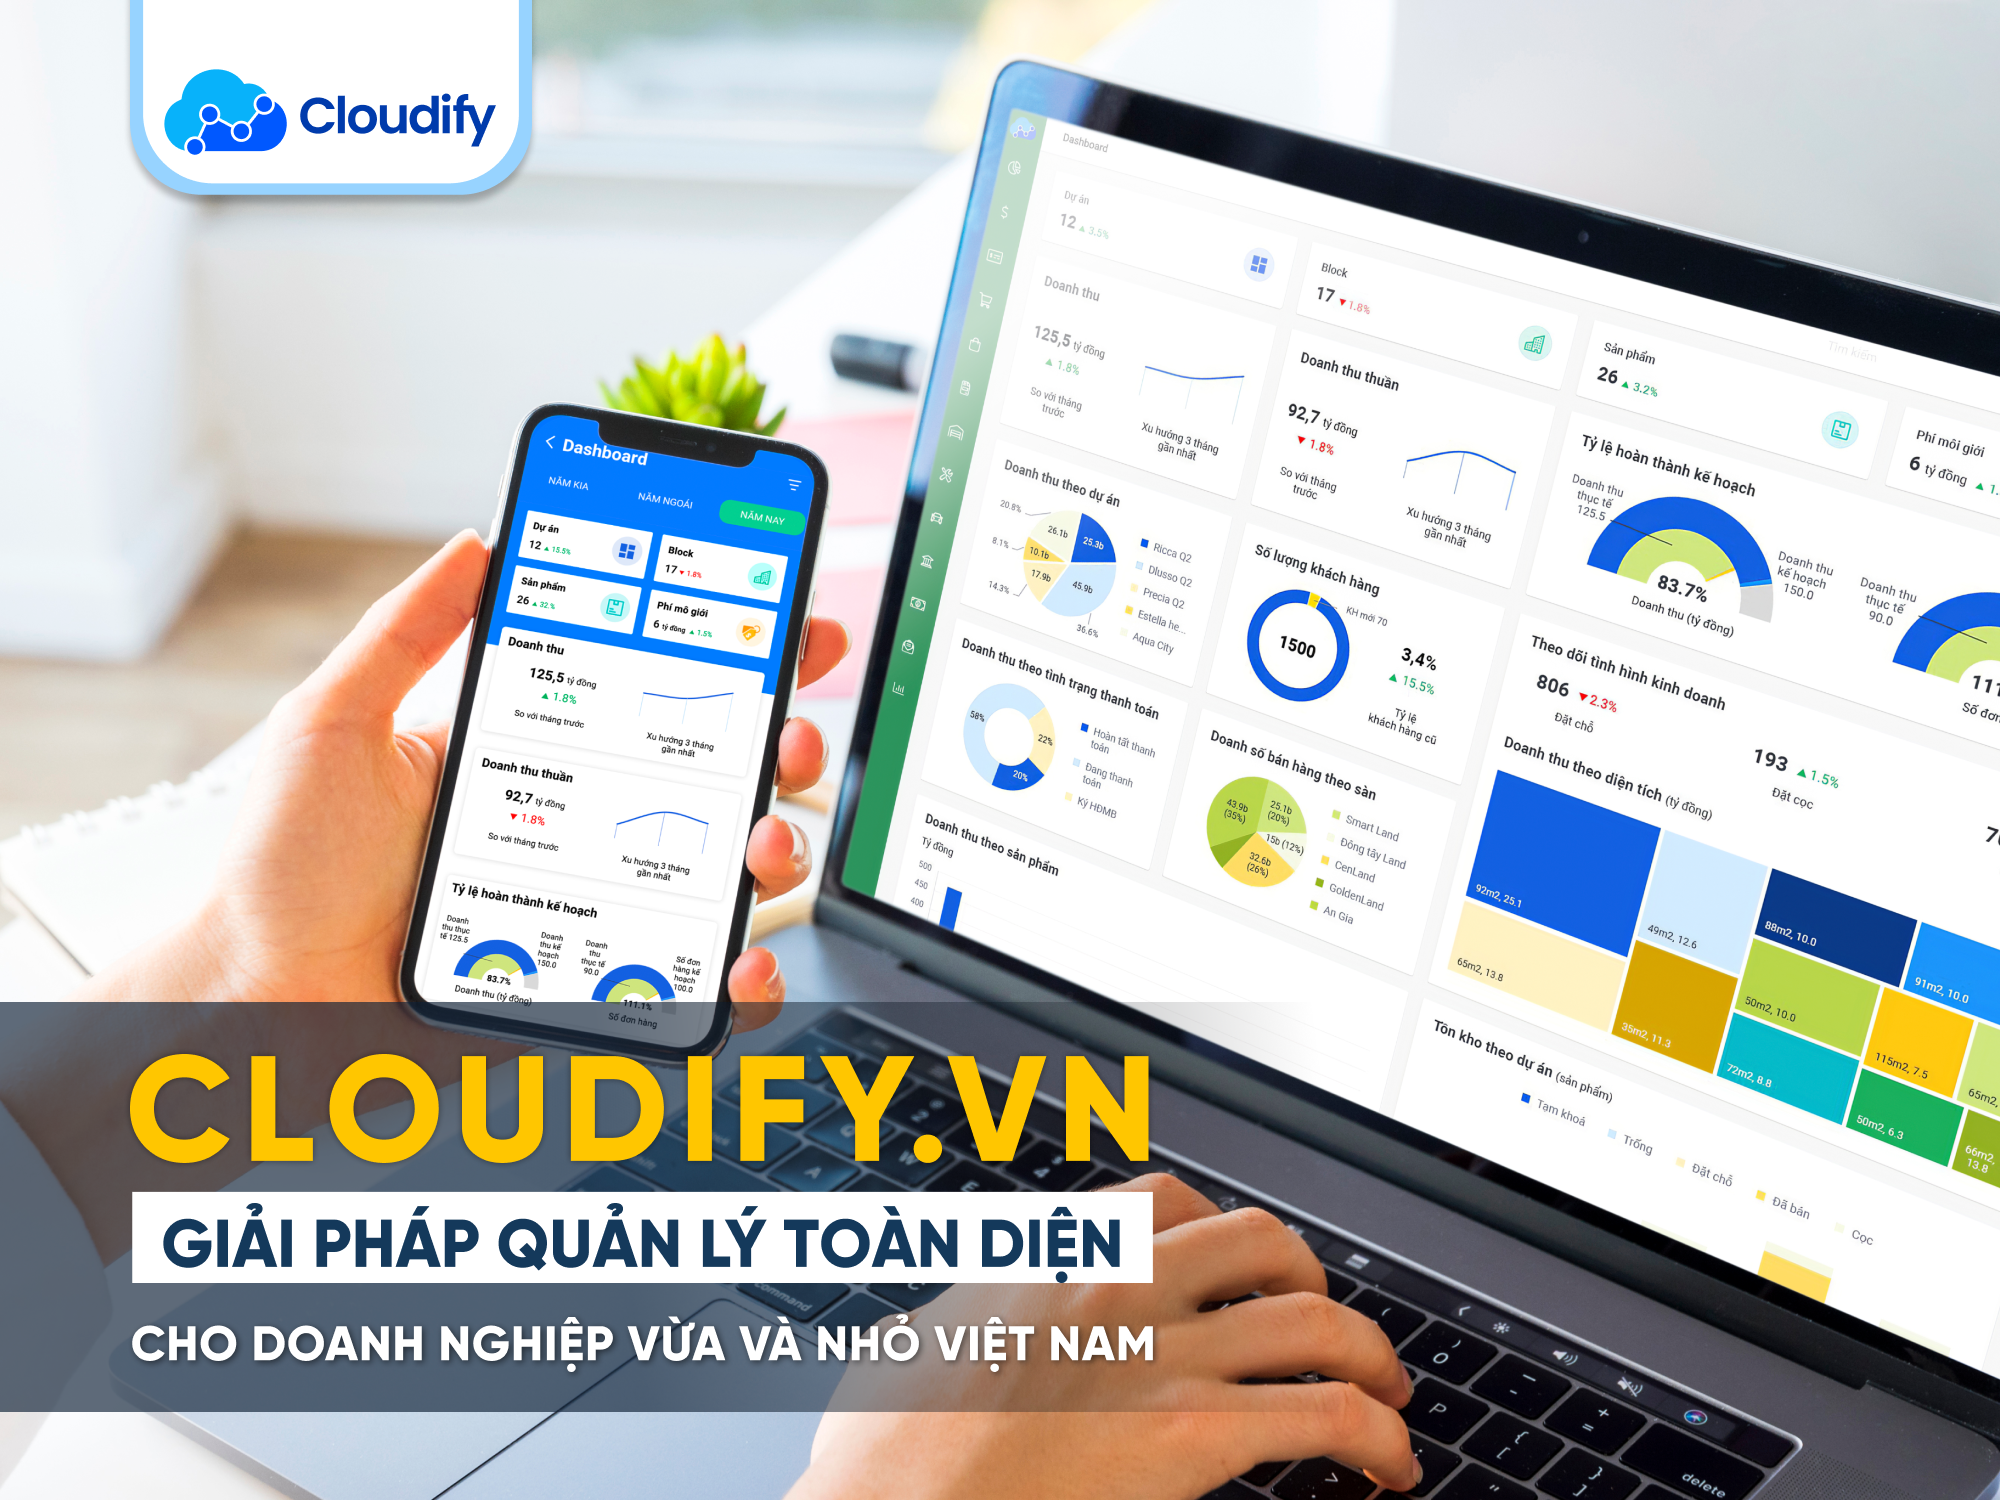 Cloudify.vn - giải pháp quản lý toàn diện cho doanh nghiệp vừa và nhỏ Việt Nam